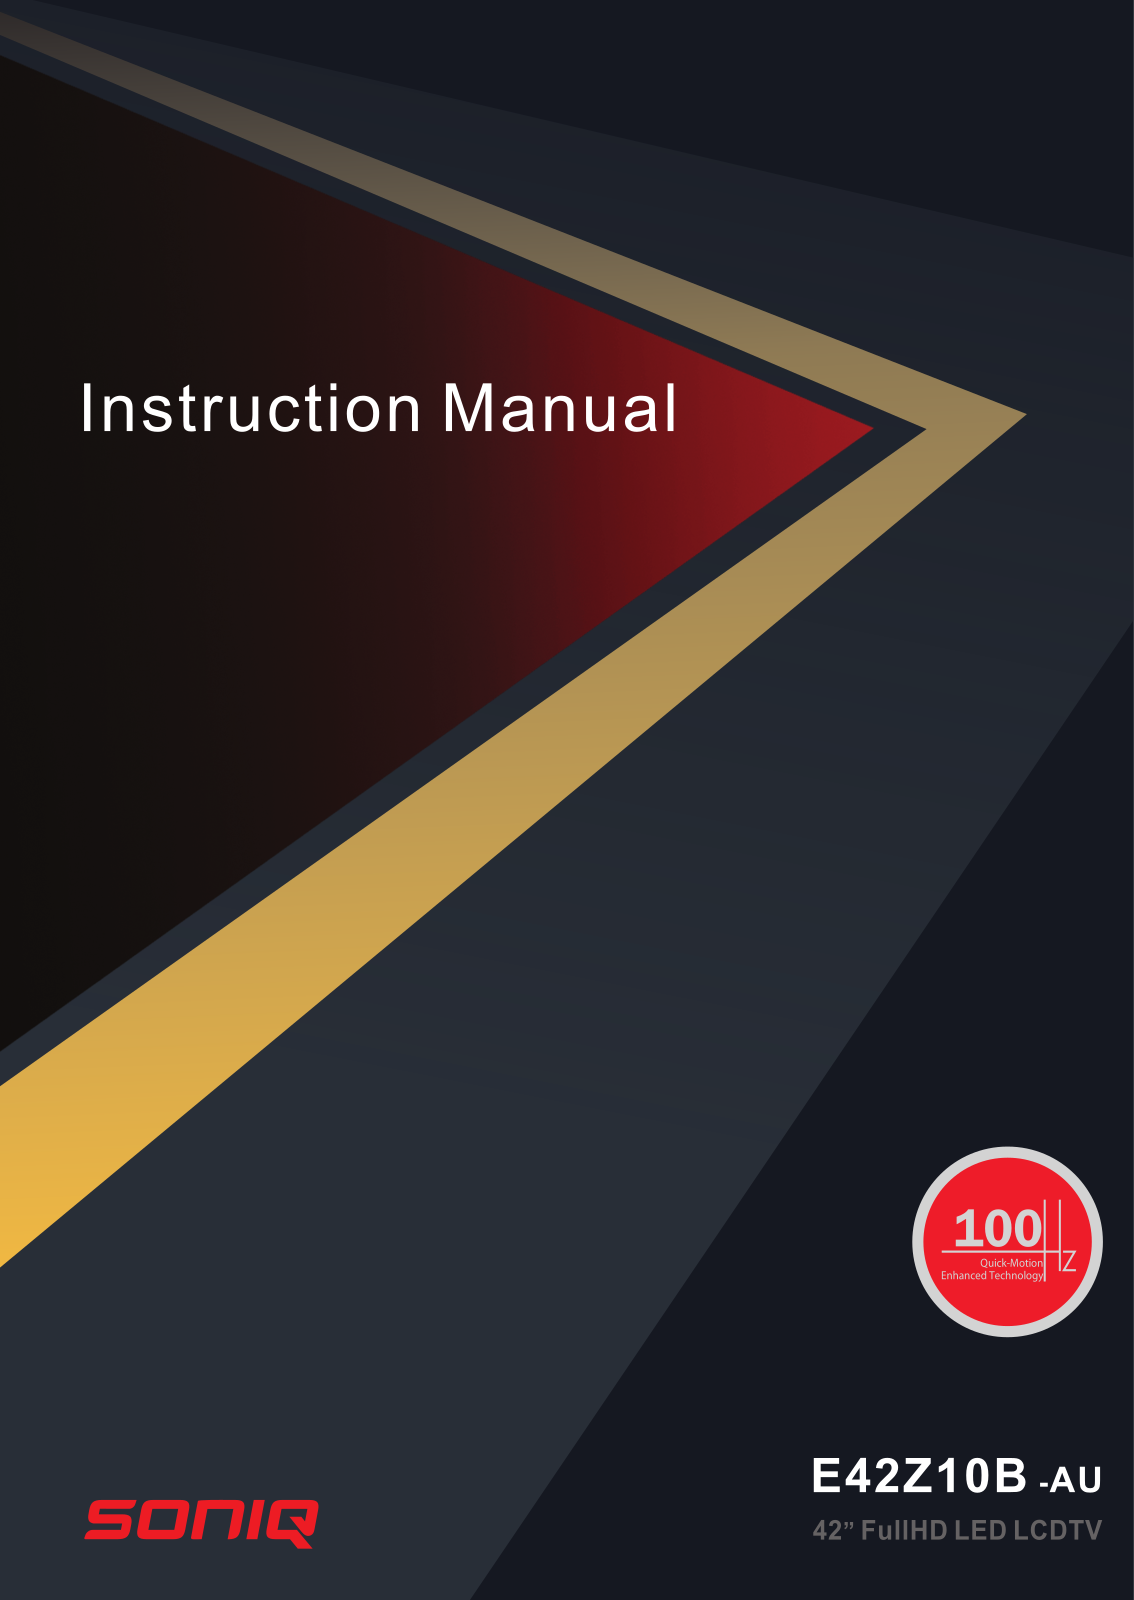 SONIQ E42Z10B Instruction Manual